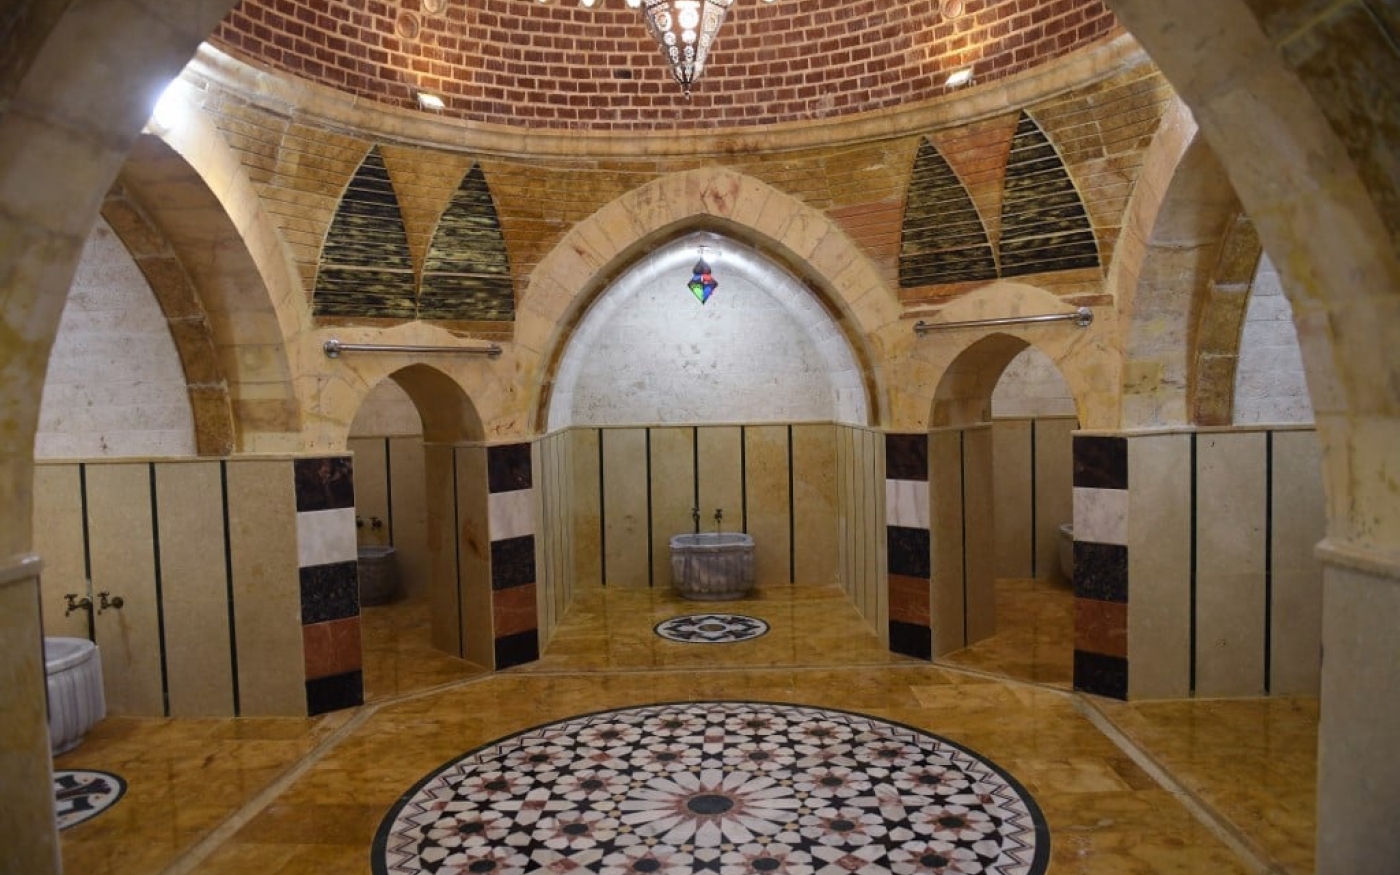 Le bain thermal, ou hammam, est la première étape des rituels de mariage et symbolise la pureté (AFP)